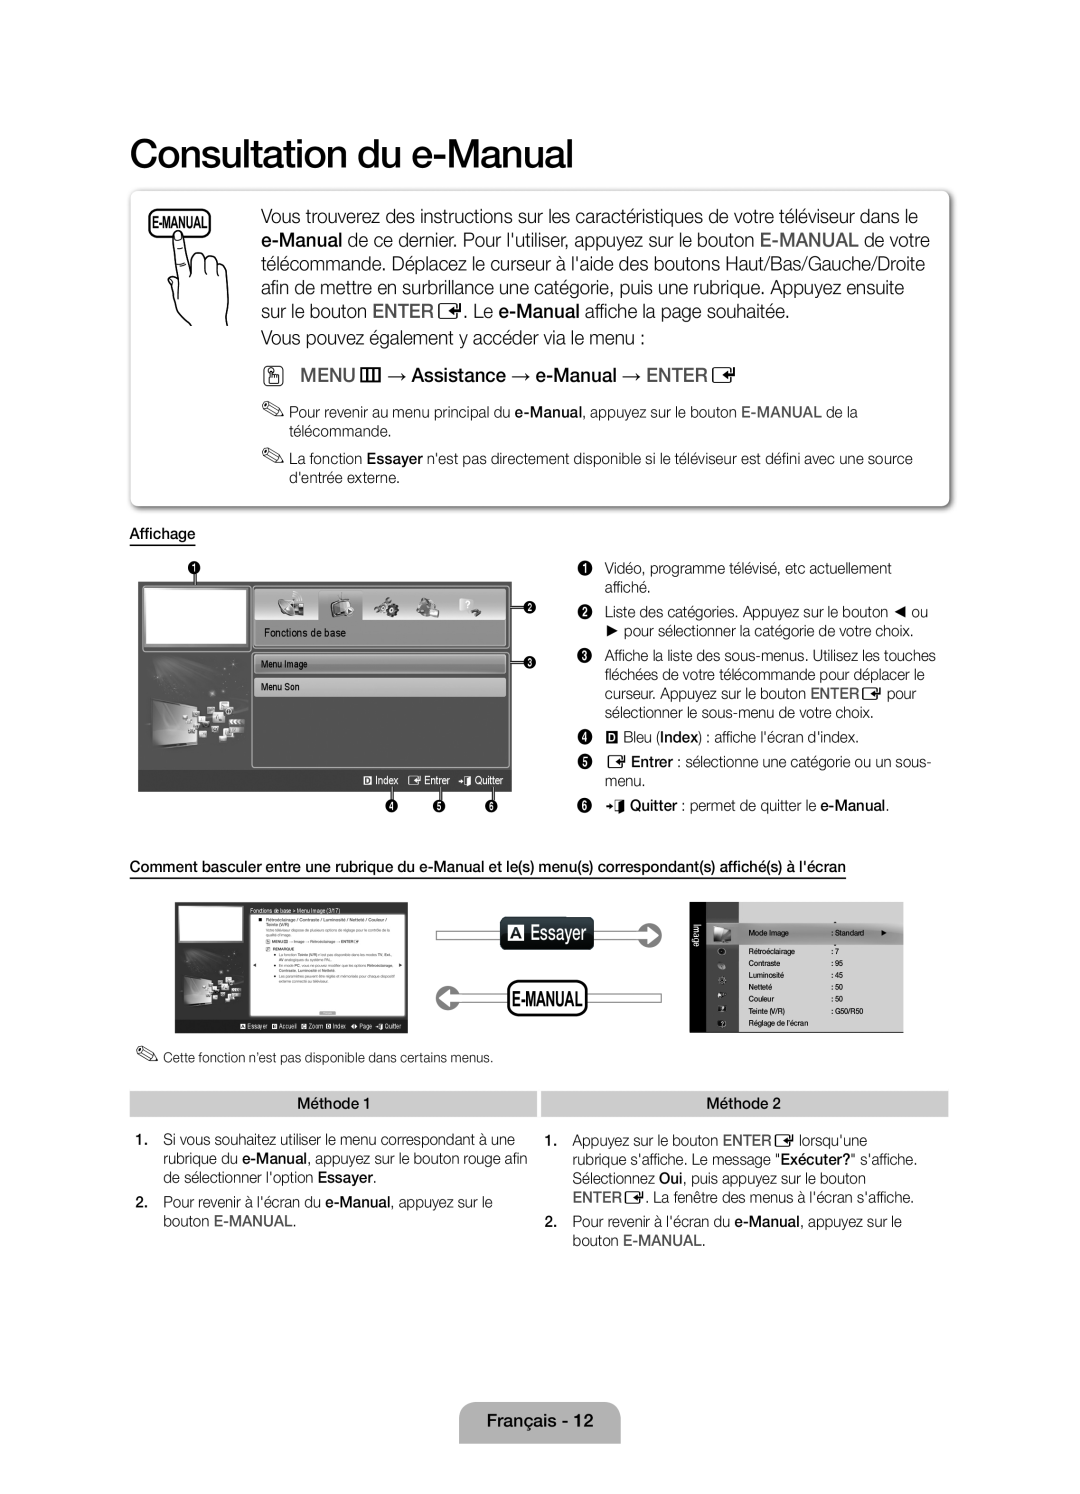 Samsung UE32D4000NWXXN Consultation du e-Manual, aEssayer, sur le bouton ENTER E. Le e-Manual affiche la page souhaitée 